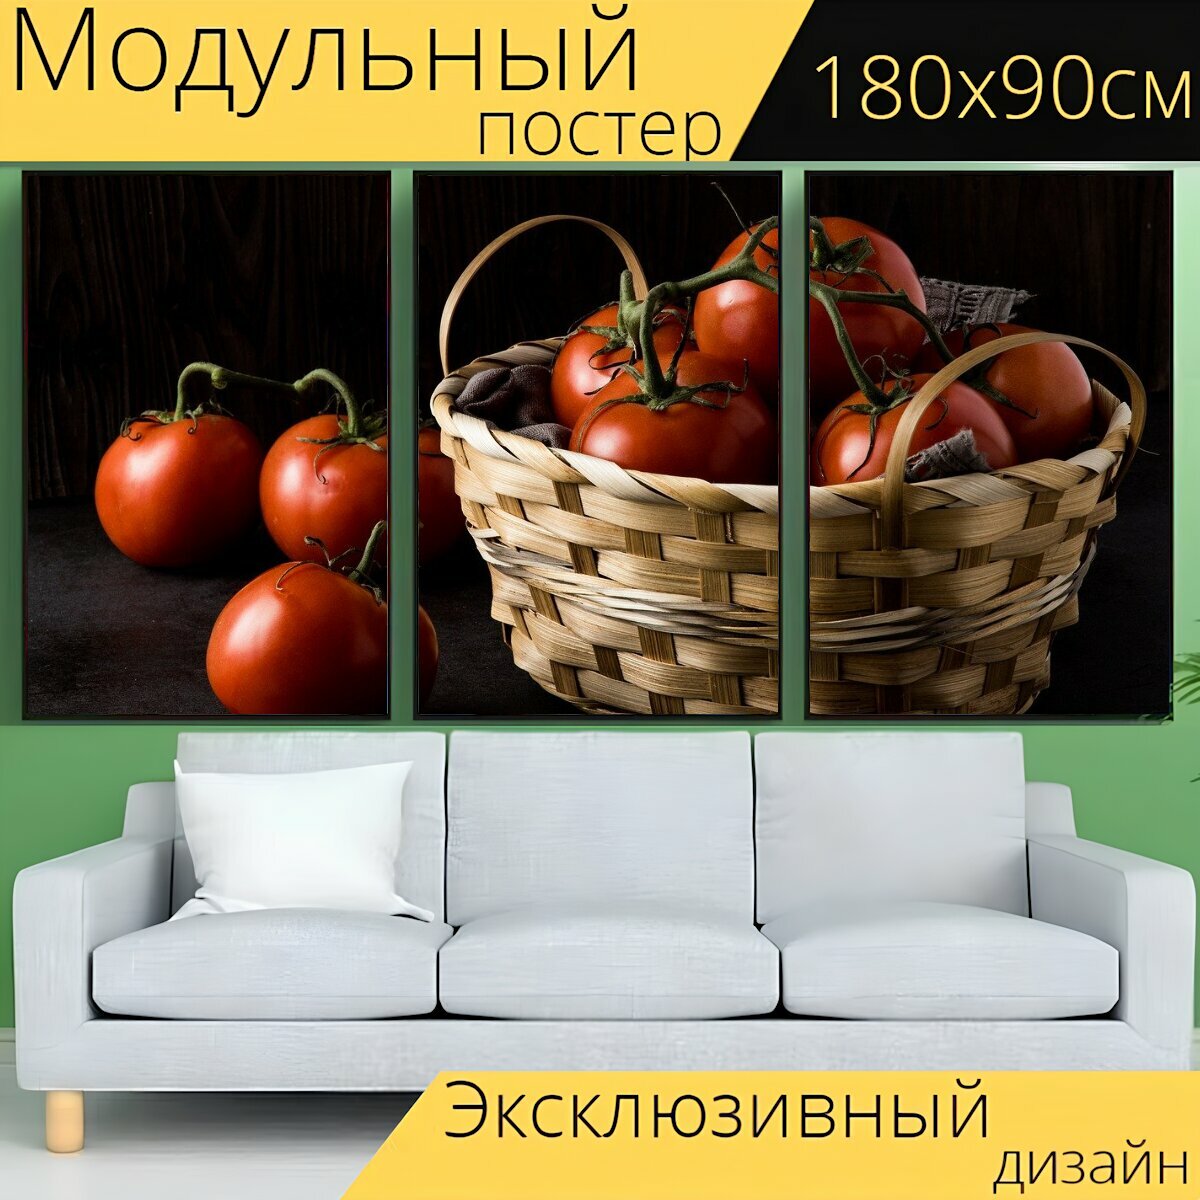 Модульный постер "Помидоры, корзина, овощи" 180 x 90 см. для интерьера